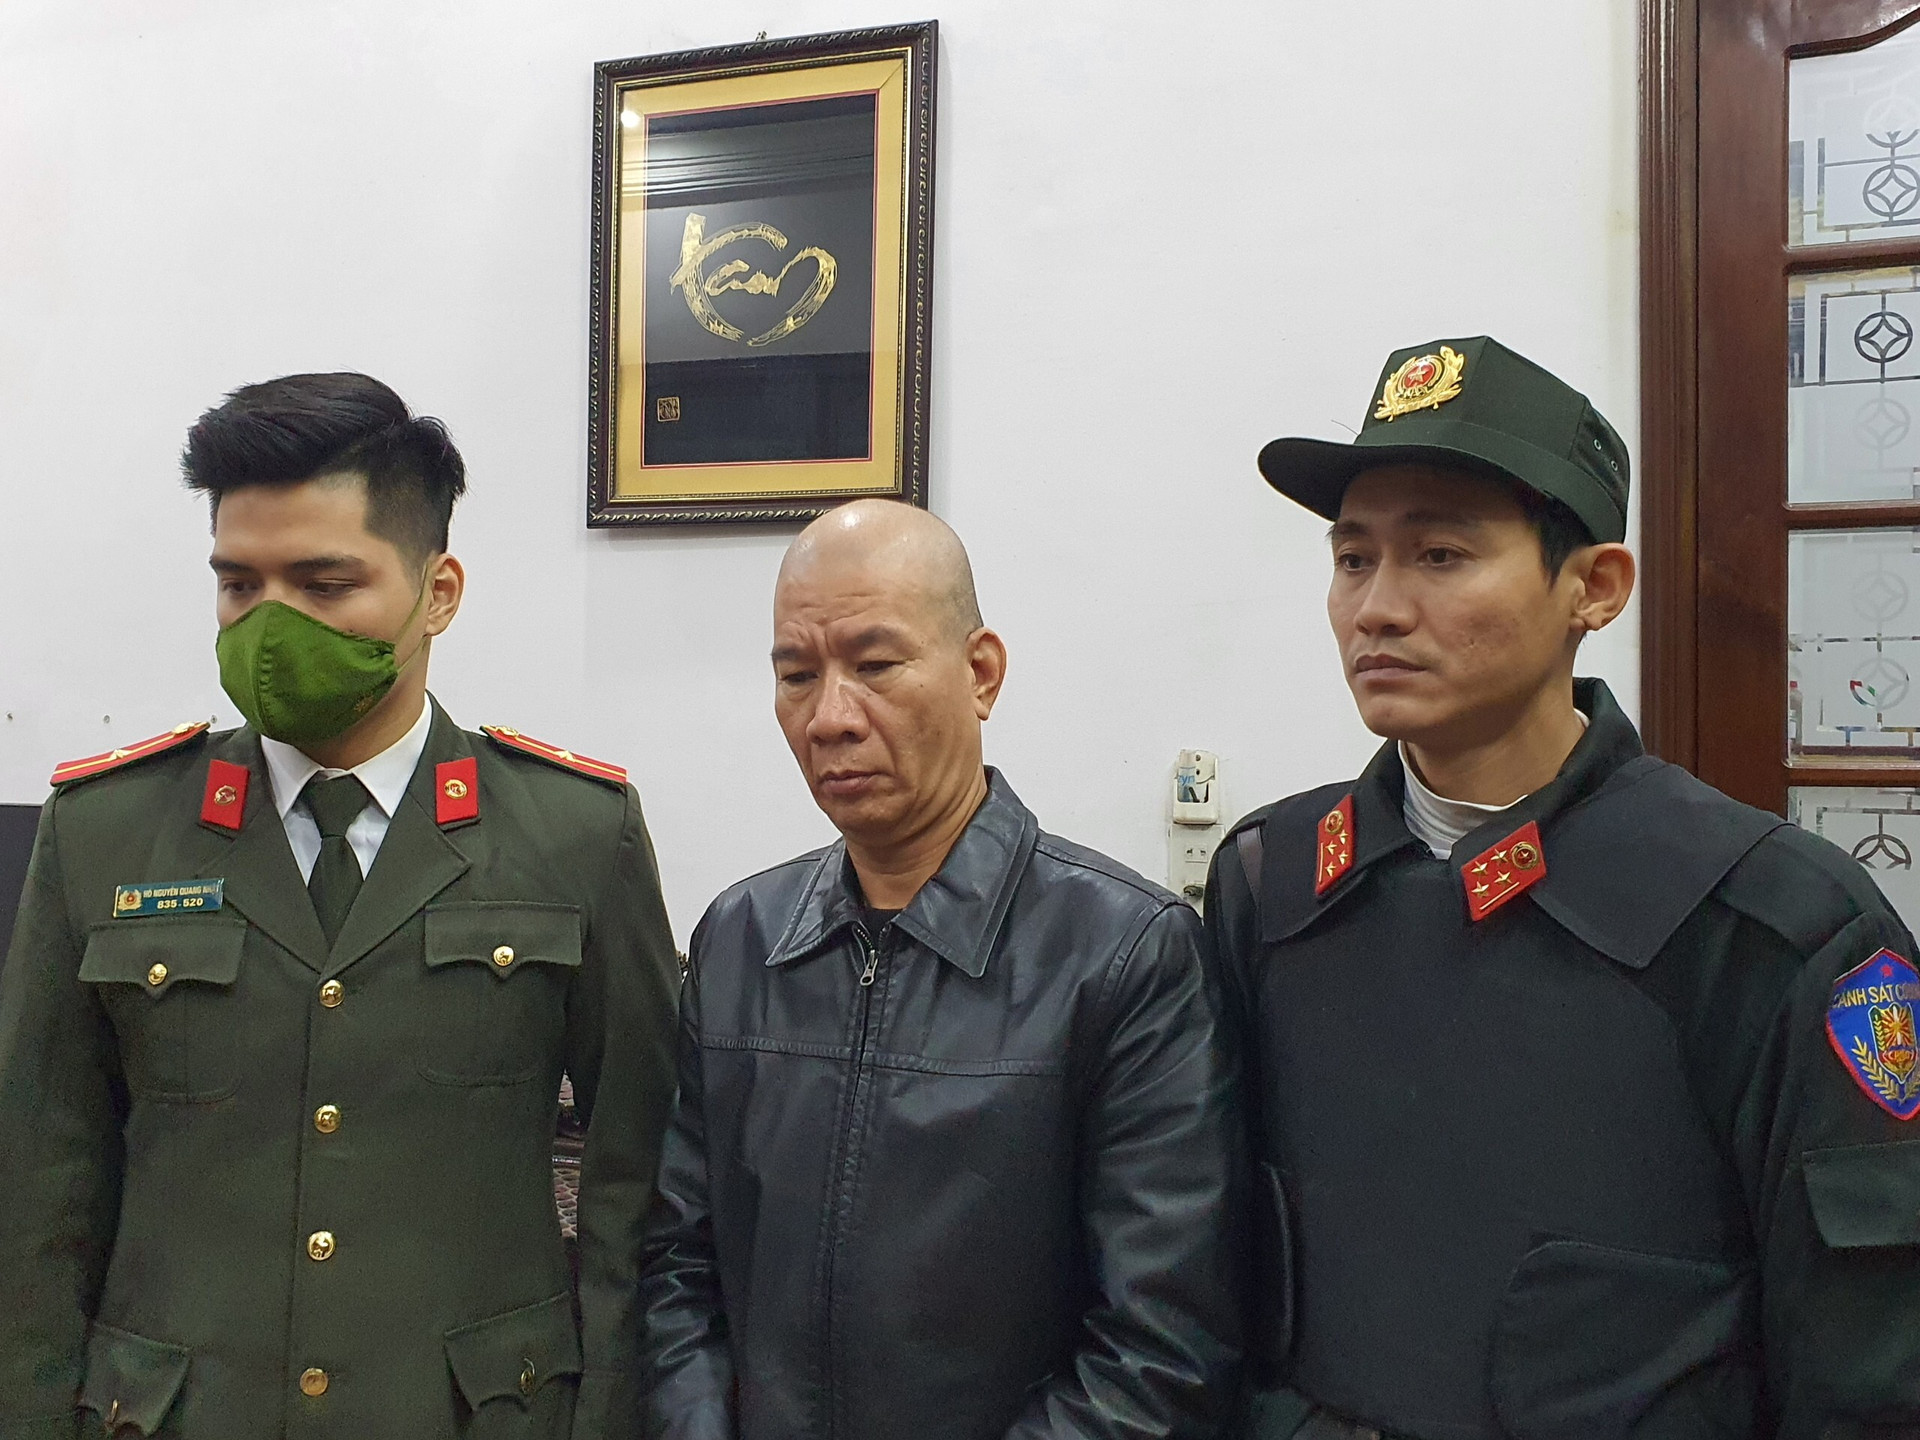 Công an Thừa Thiên - Huế bắt kẻ cầm đầu đường dây cá độ 1500 tỷ đồng - 1